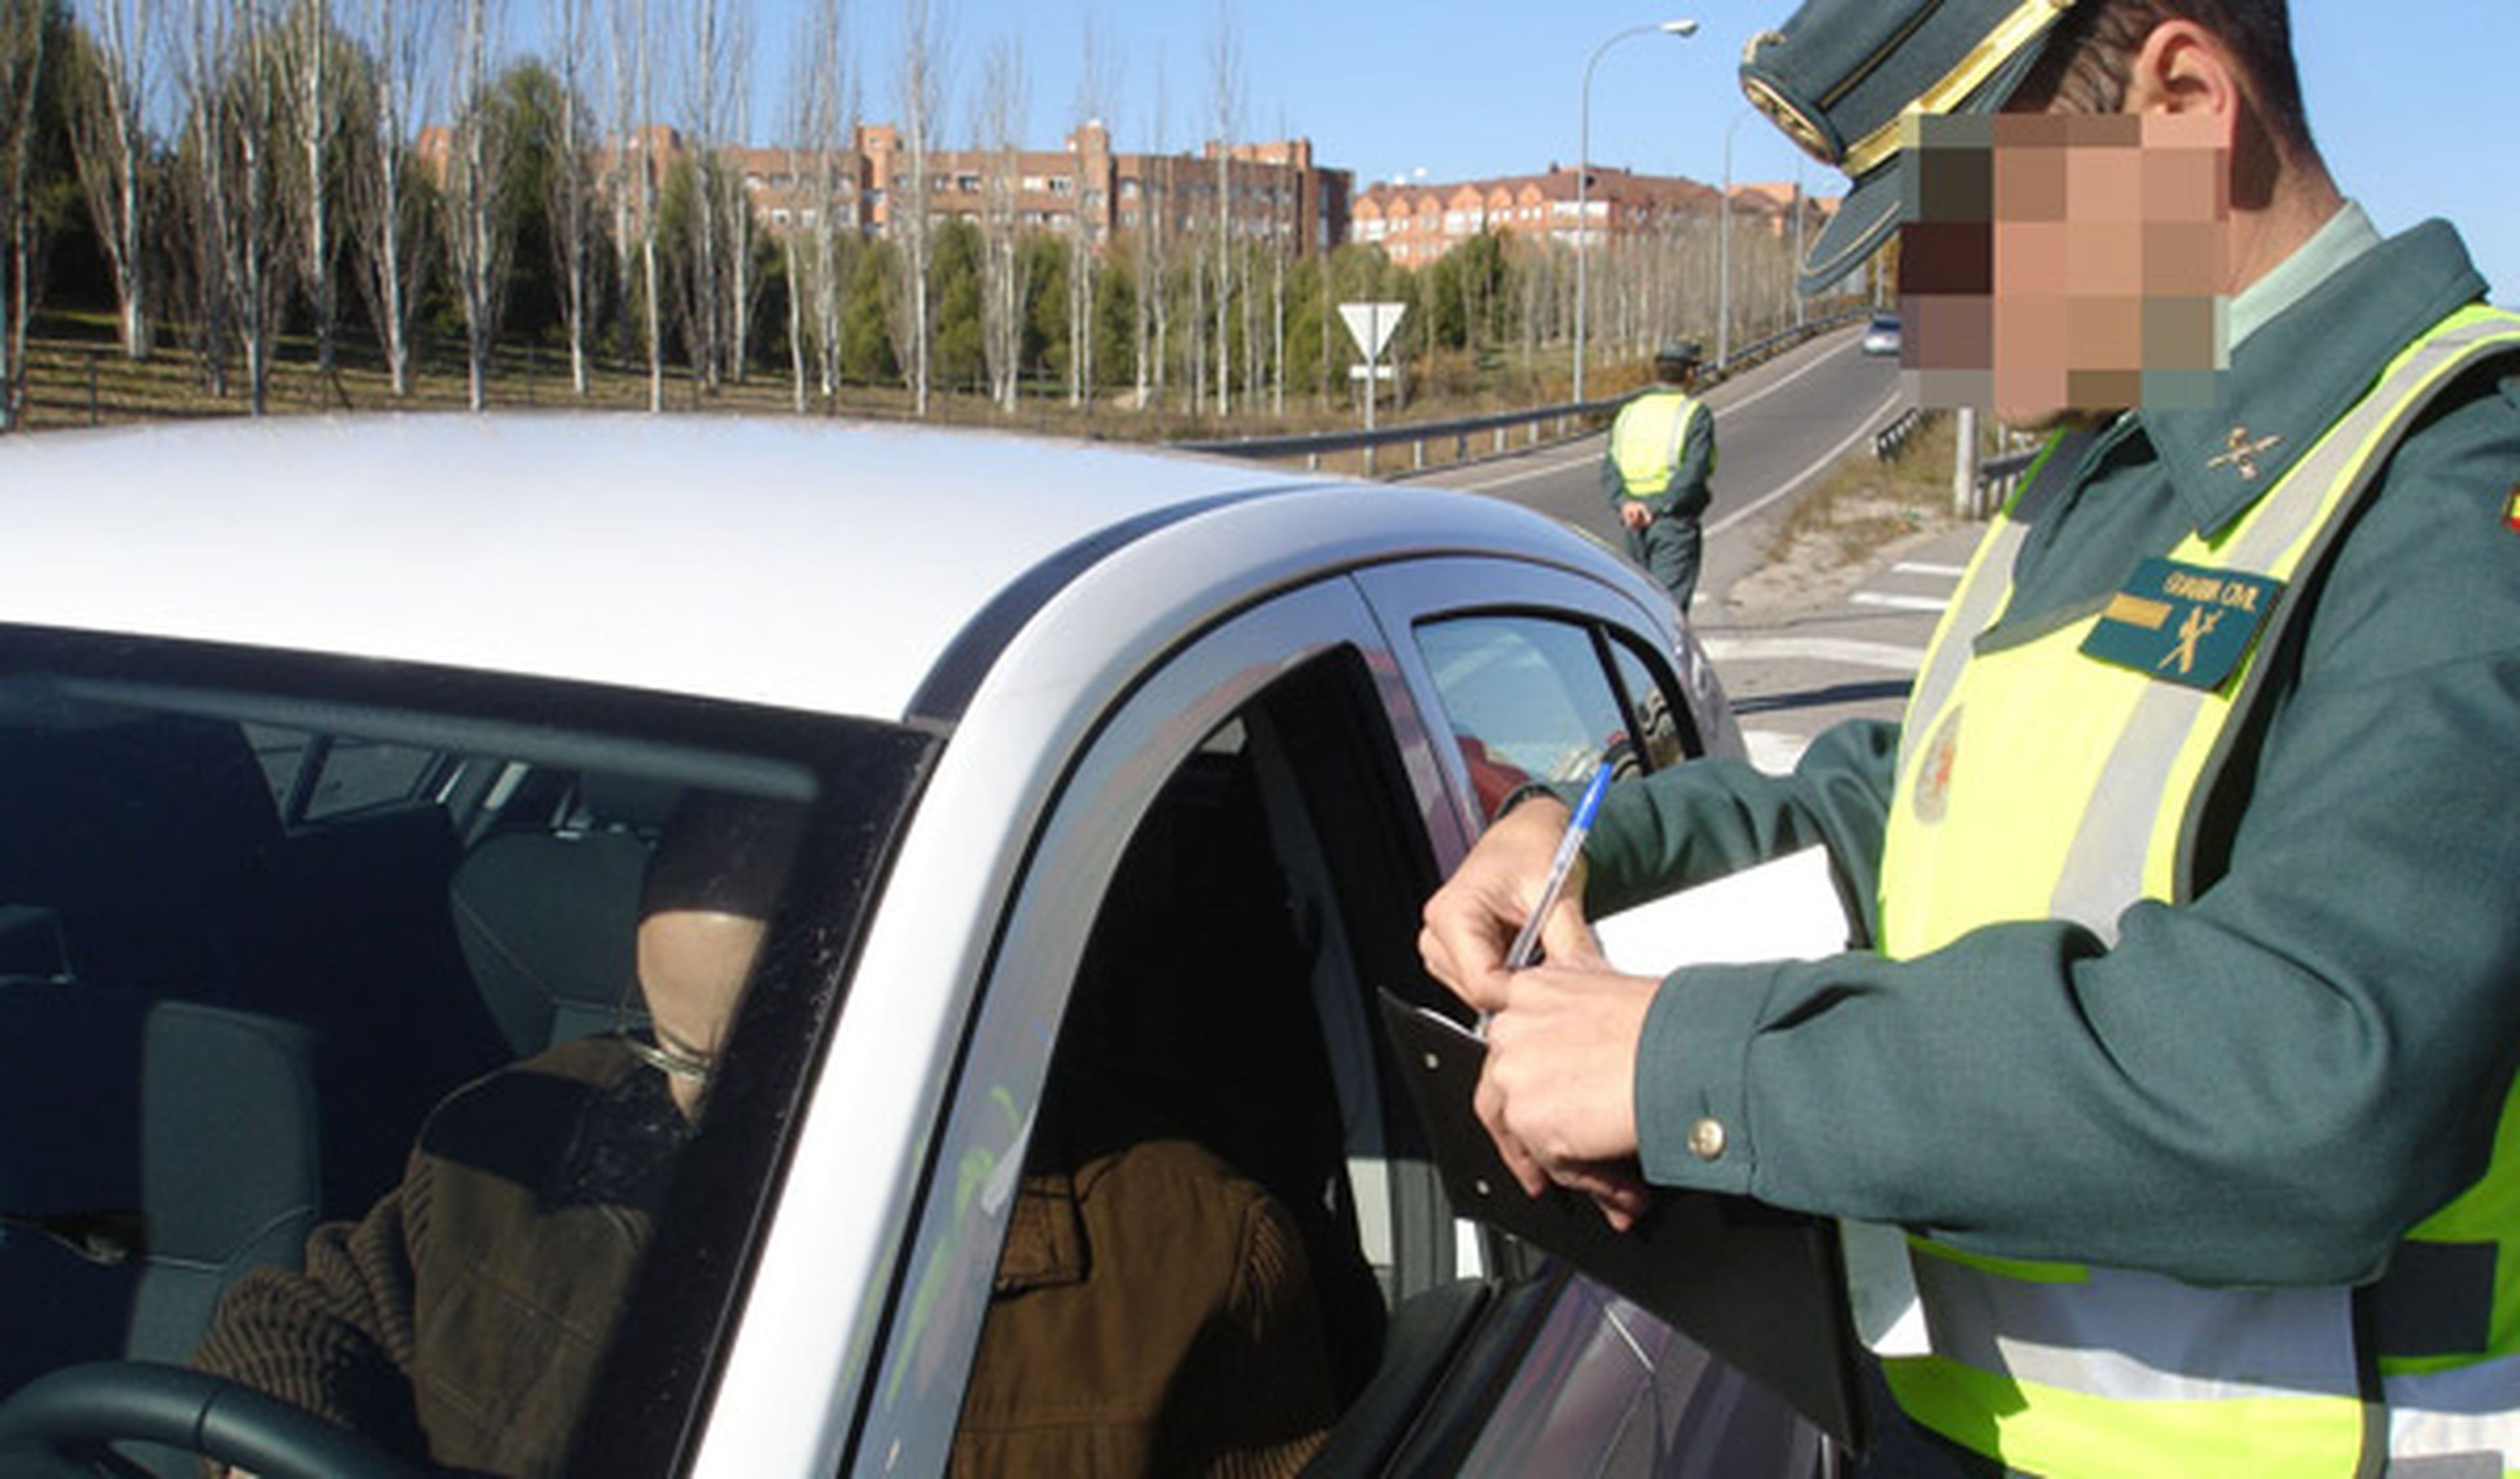 Sólo se puede multar a partir de 116 km/h, según la Guardia Civil